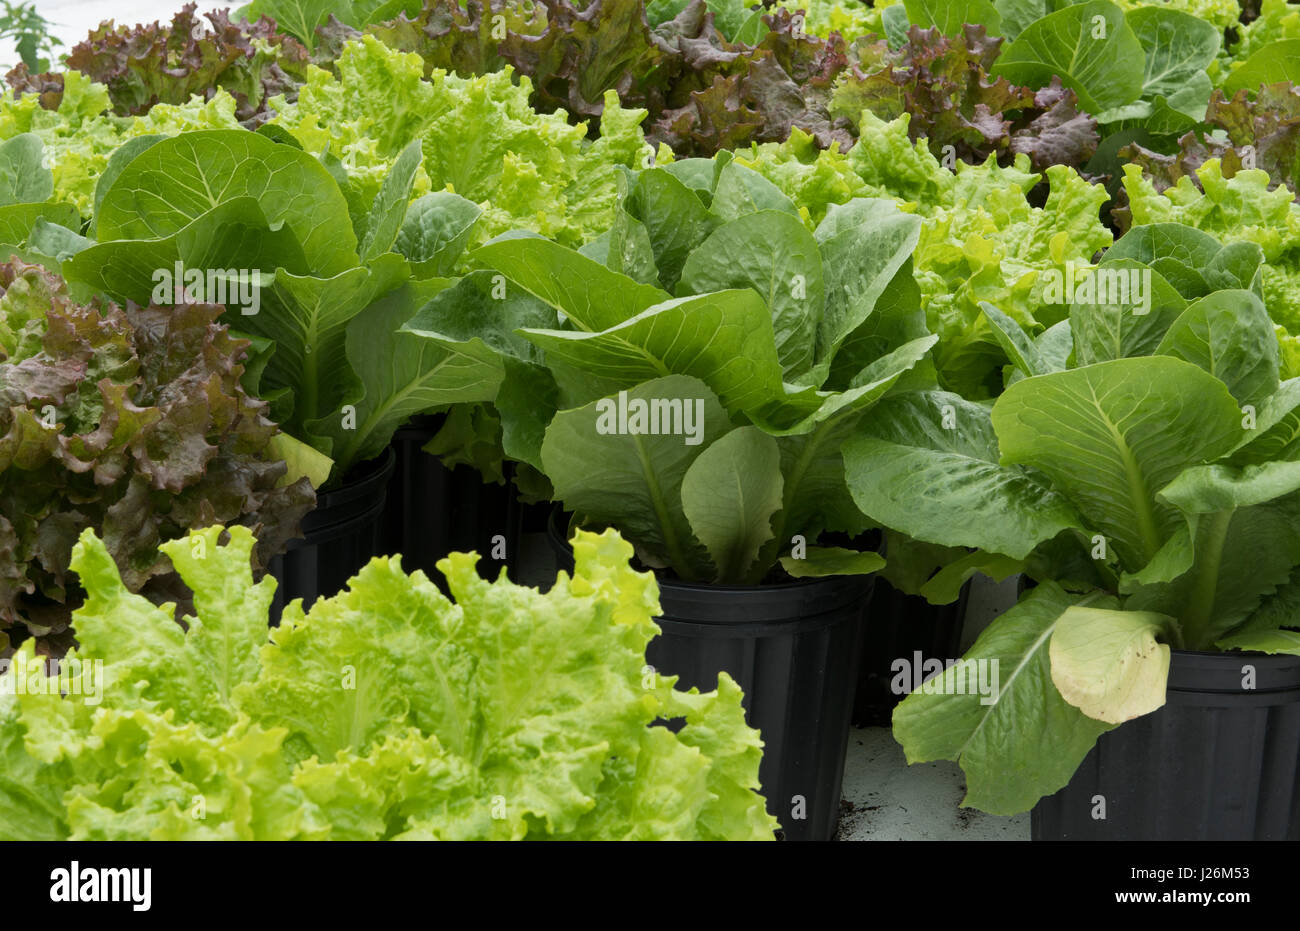 Orgánica de la Florida Central casa jardín con plantas de lechuga y verduras en el patio para comer una dieta sana y cooperativa agraria Foto de stock